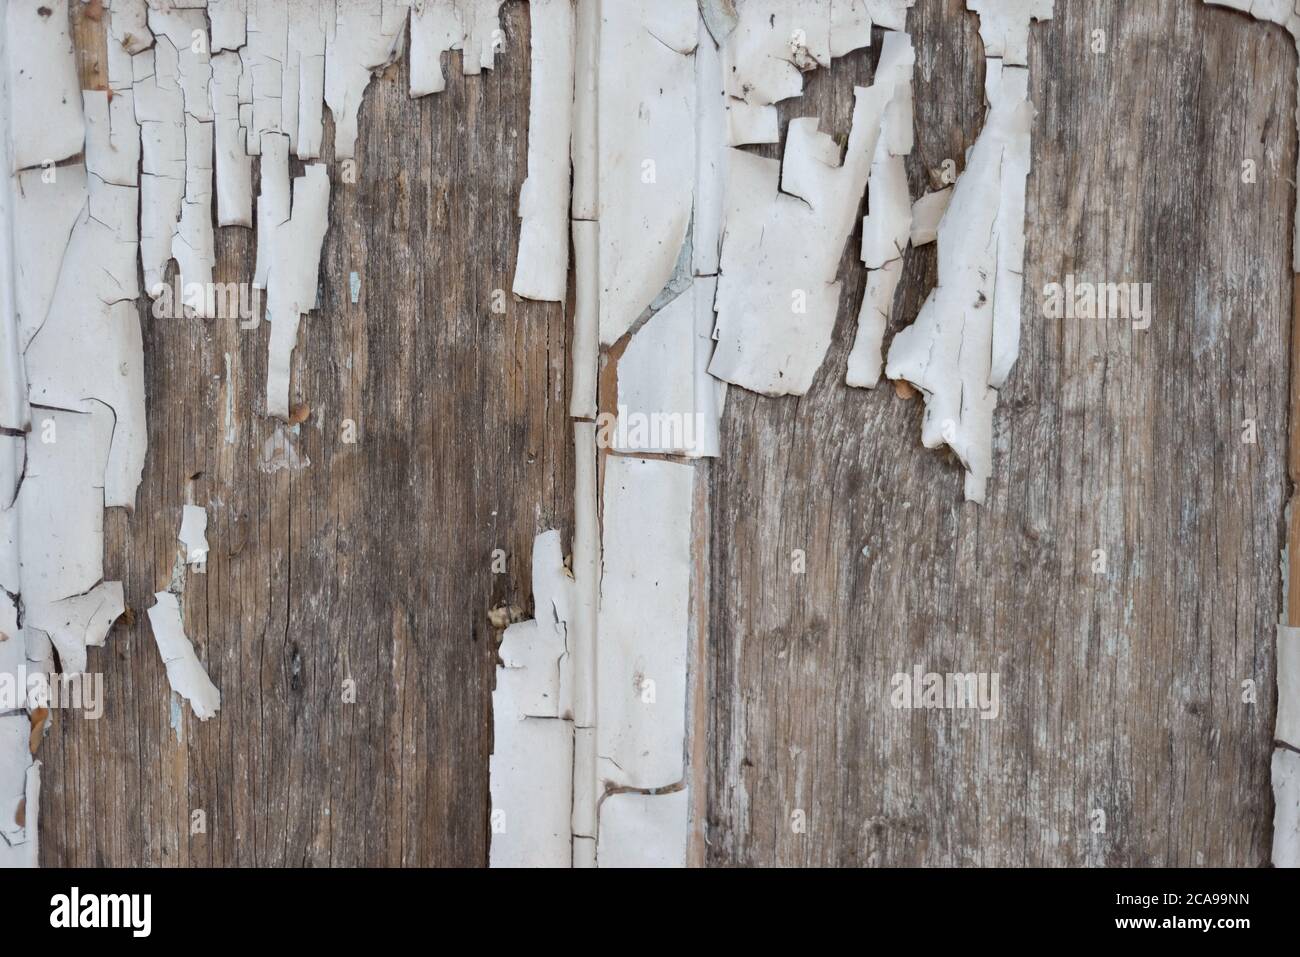 La pared de madera con pintura blanca está muy deteriorada y pelando la pintura  blanca vieja en la madera textura de cierre, pintura pelada, antigua,  vintage, copia espacio de palmada Fotografía de